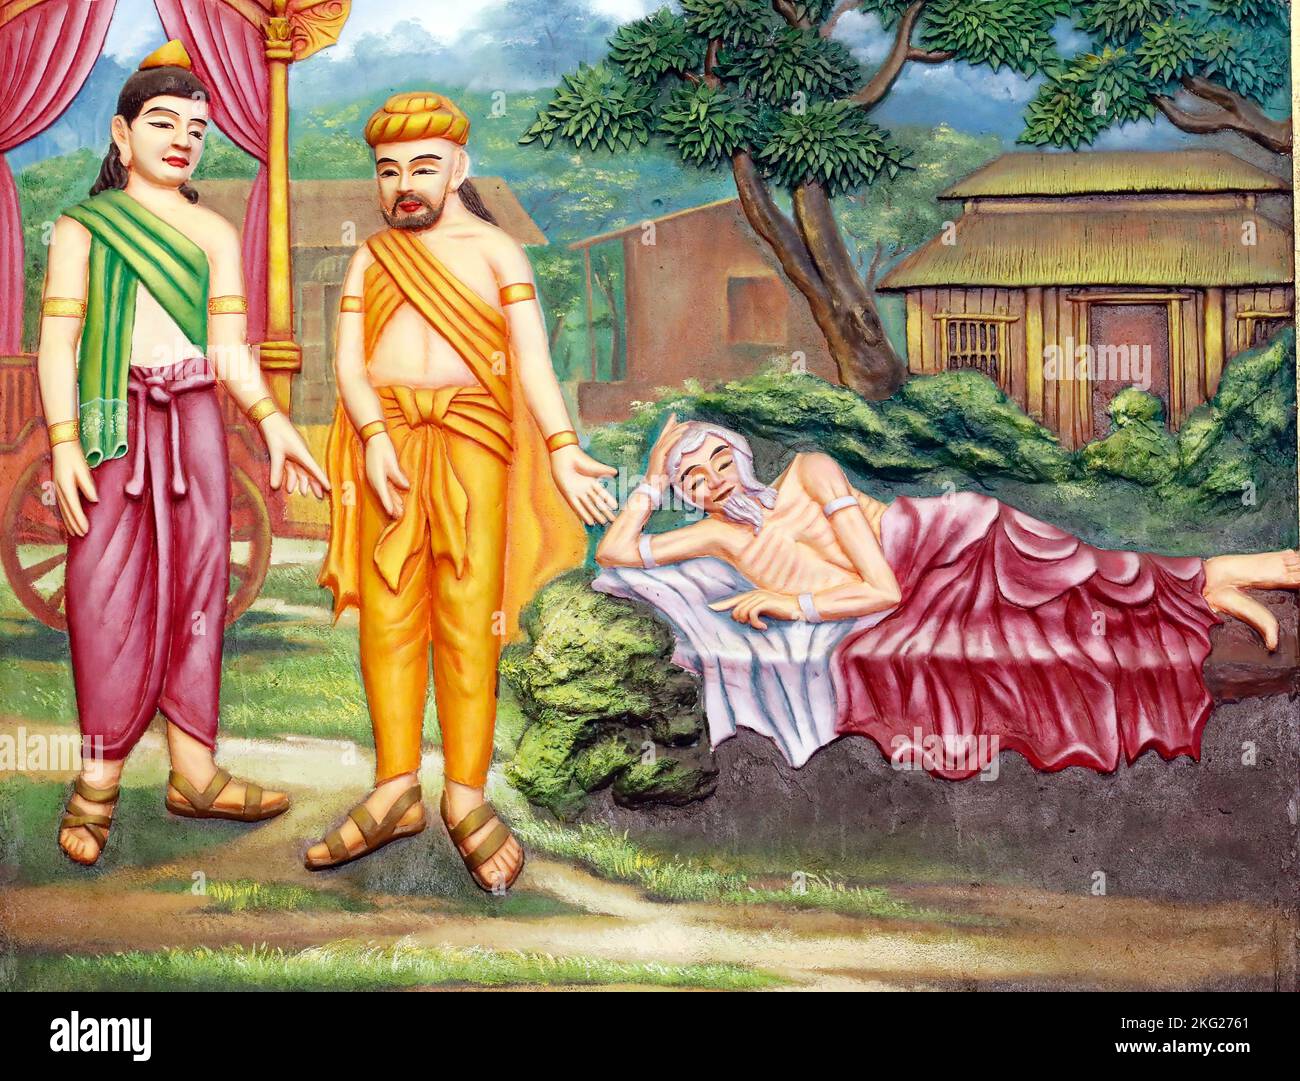 Tempio buddista di BA Vang. Durante la sua visita al parco reale, il principe Siddhartha vide i quattro grandi segni, cioè: Un vecchio, un malato, un cadavere un Foto Stock